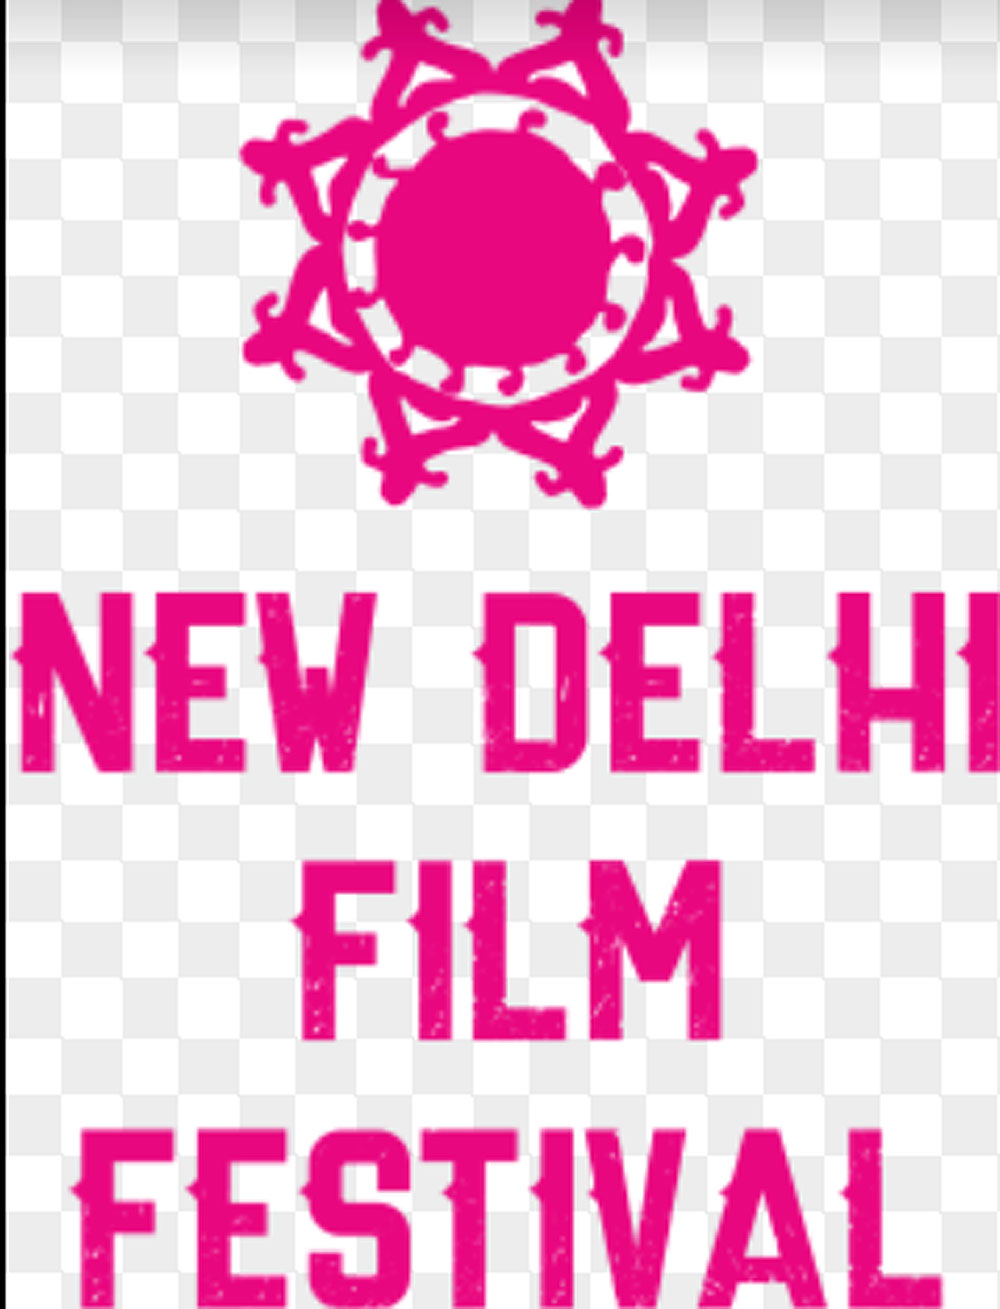 नई दिल्ली फिल्म फेस्टिवल 28 मार्च को : 52 देशों की 655 फ़िल्मों में से 20 देशों की 102 फिल्मों का चयन